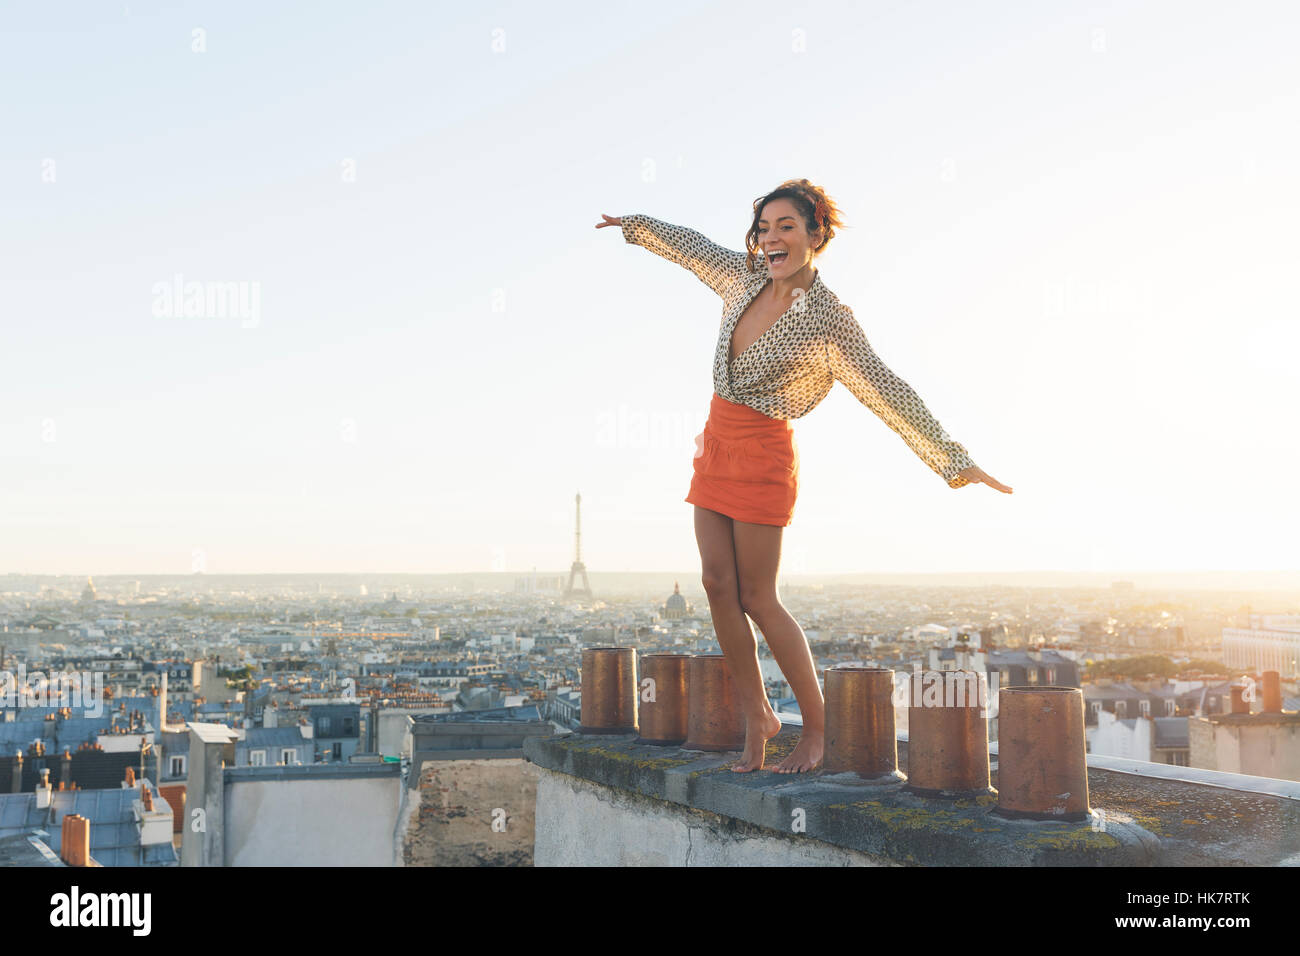 Paris, Happy woman enjoying view sur les toits de Paris Banque D'Images